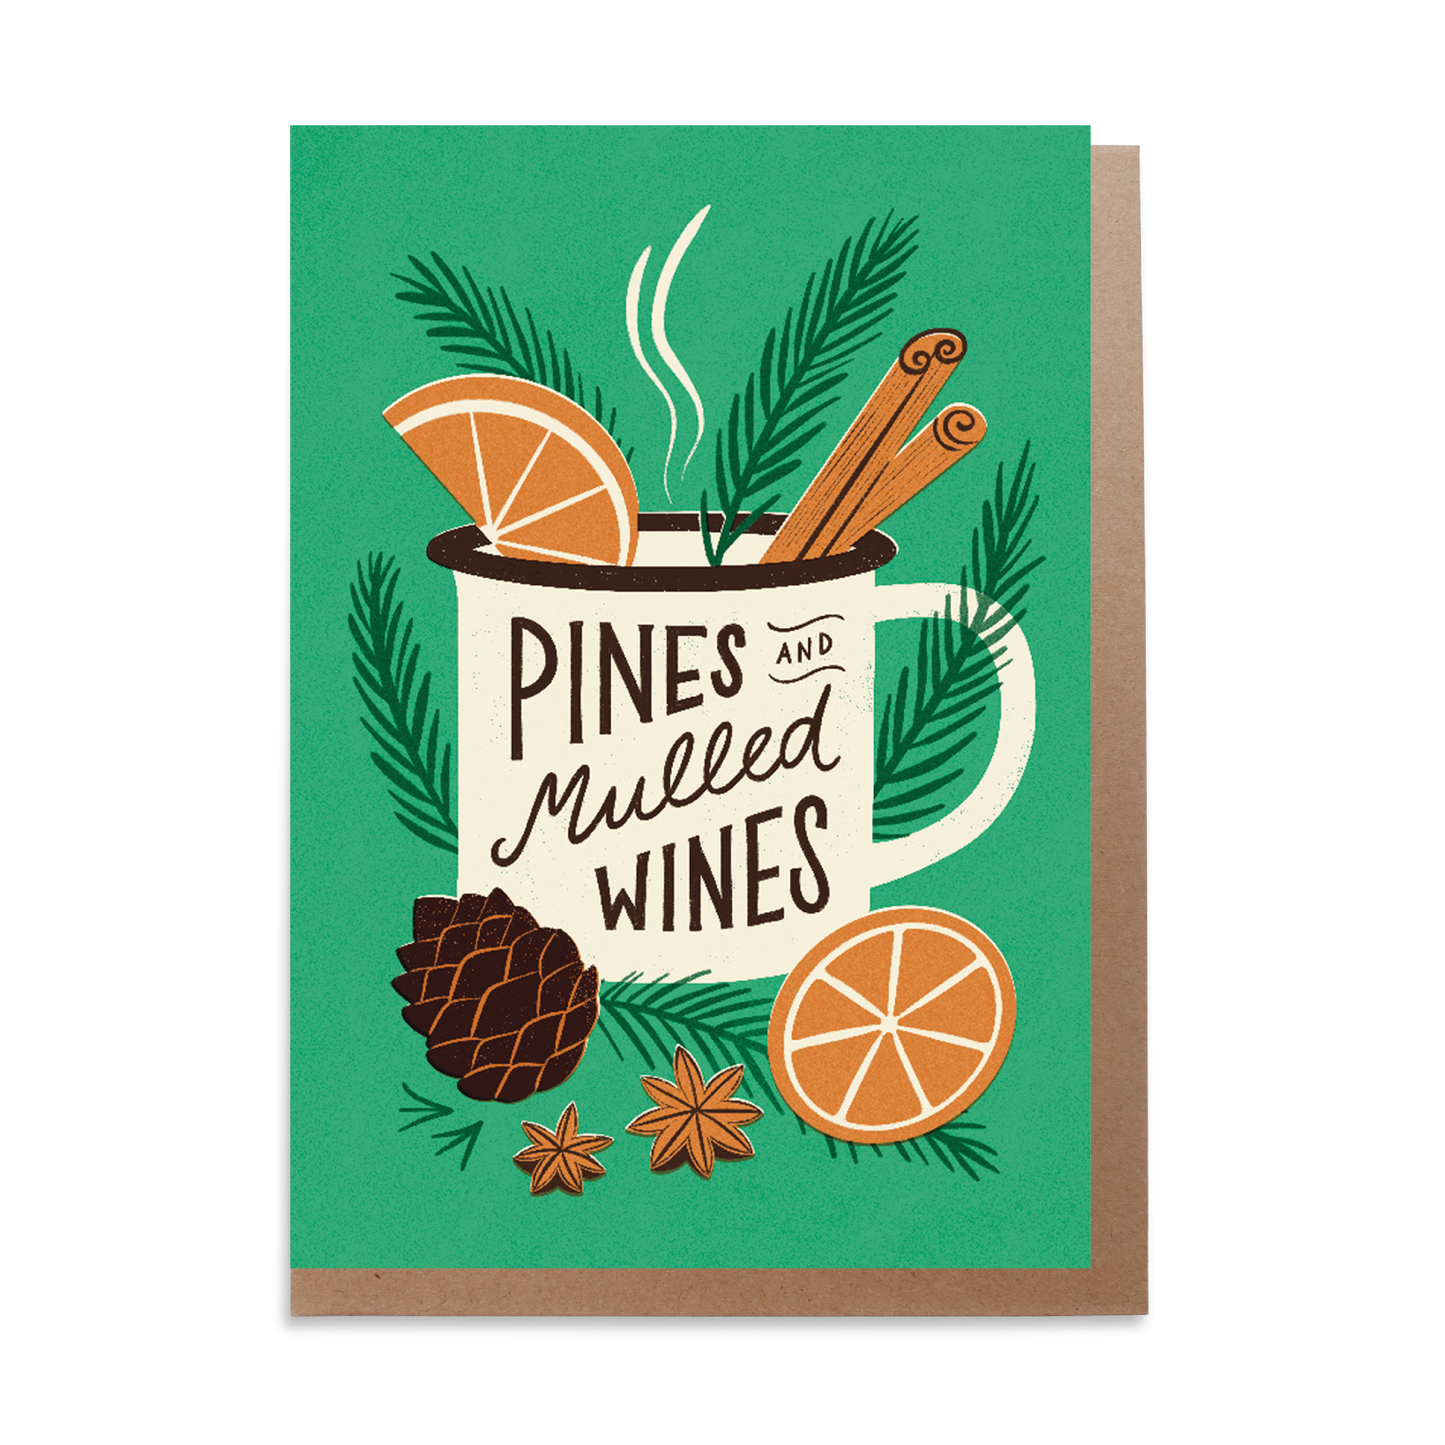 Pines & Mulled Wines Camping Mug Christmas Card